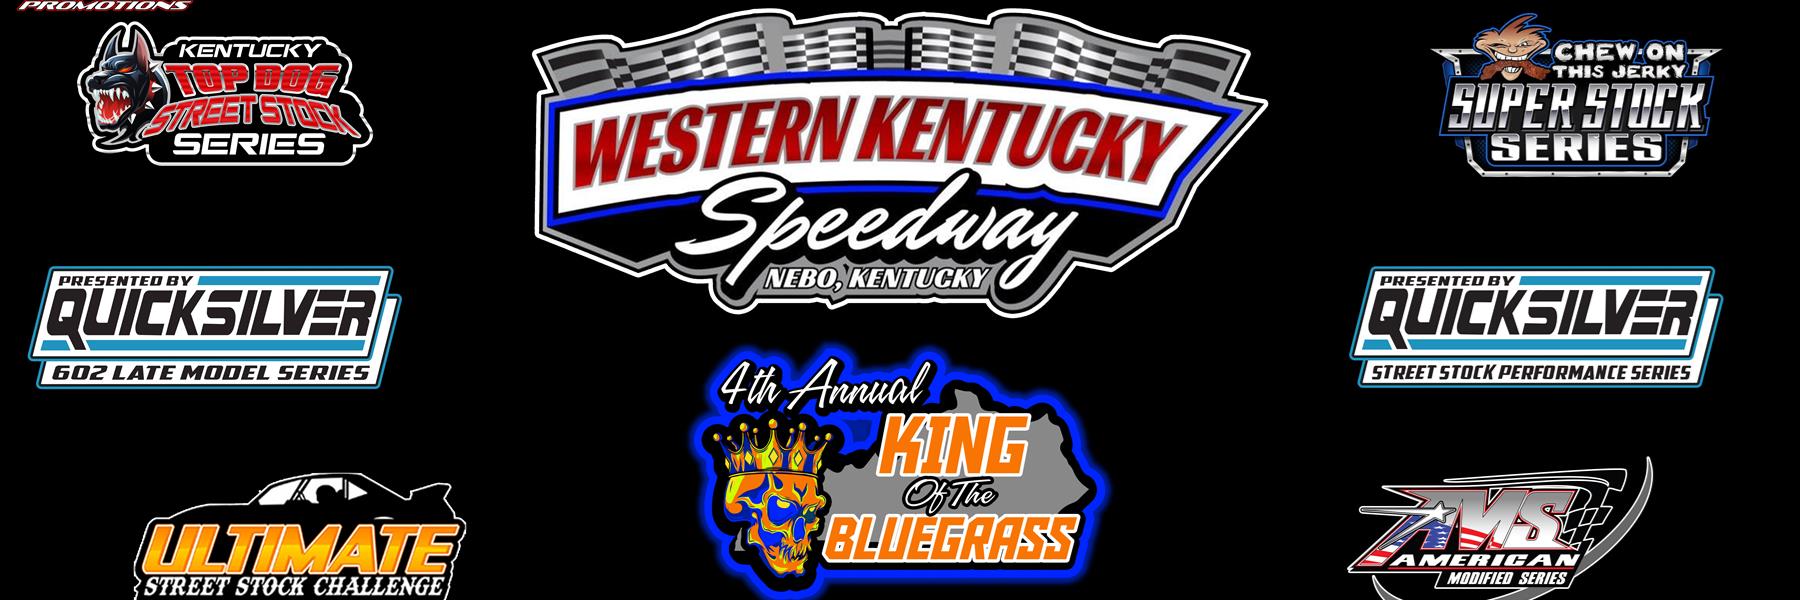 3/17/2022 - Western Kentucky Speedway